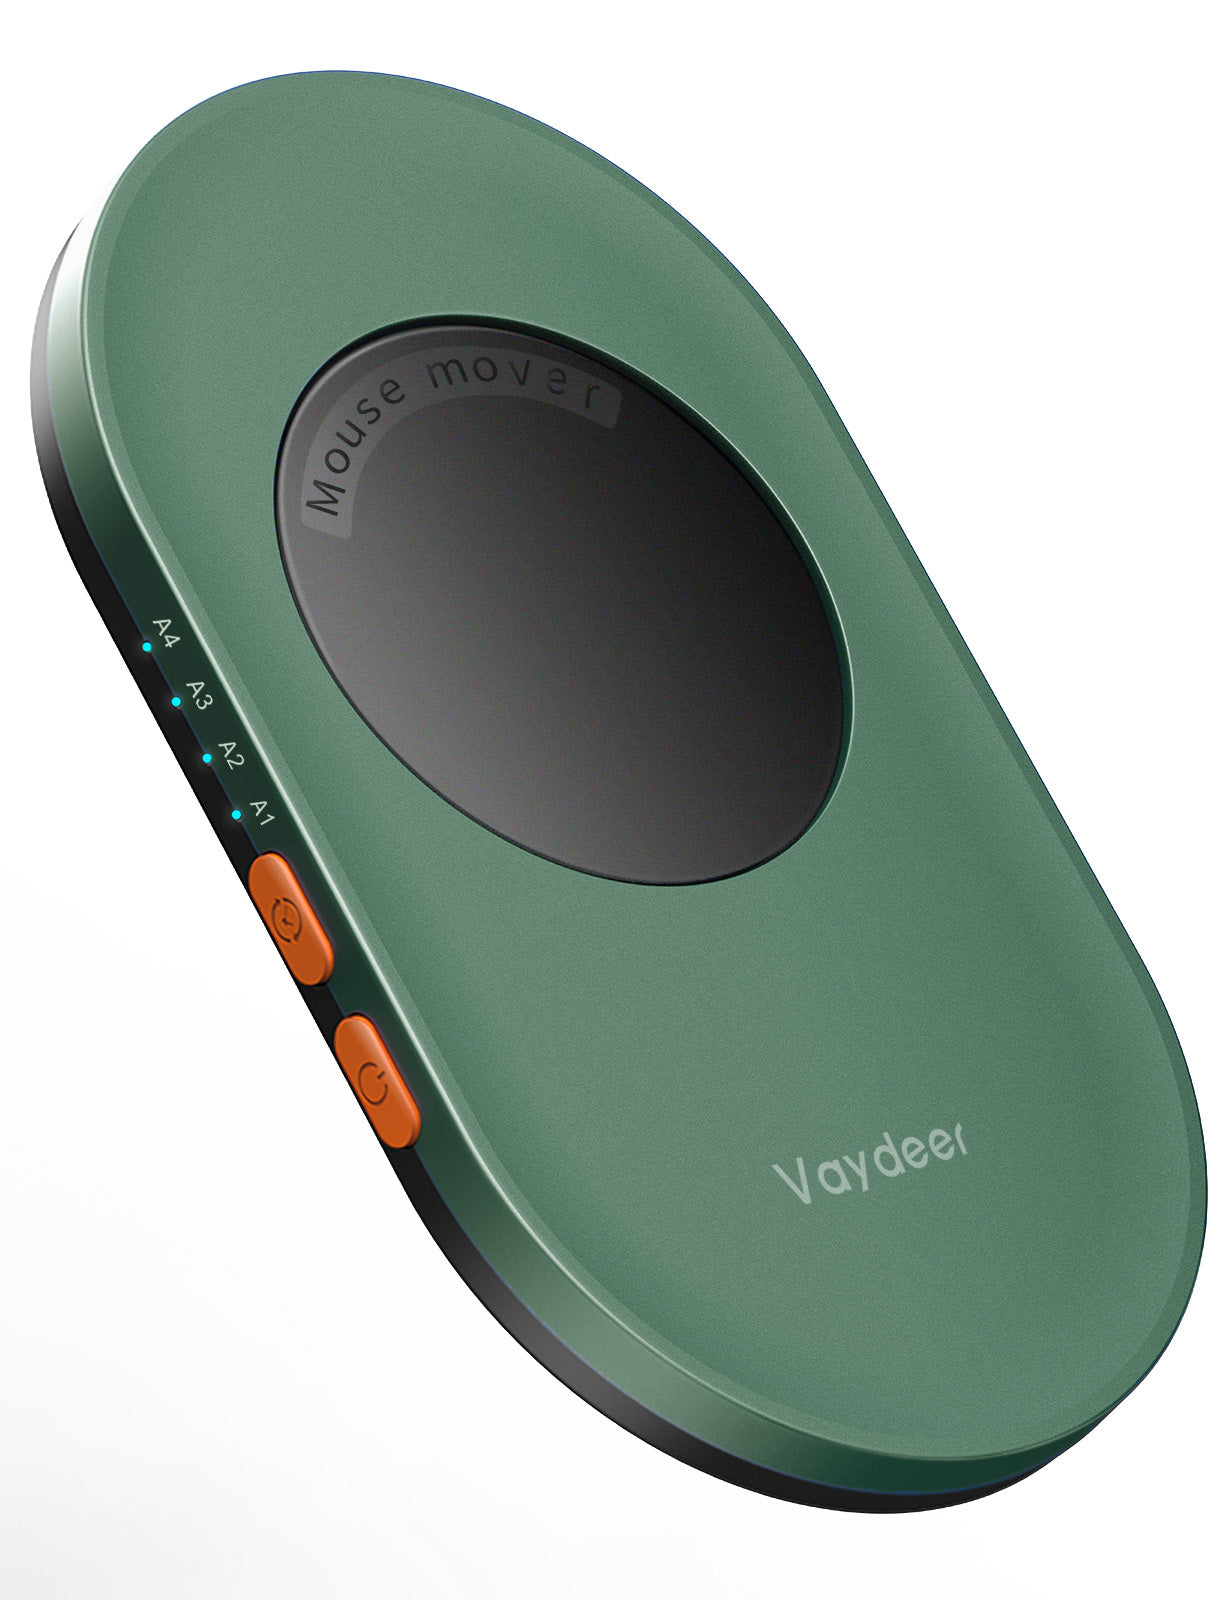 Vaydeer Ultra Slim Mechanical Mouse Mover